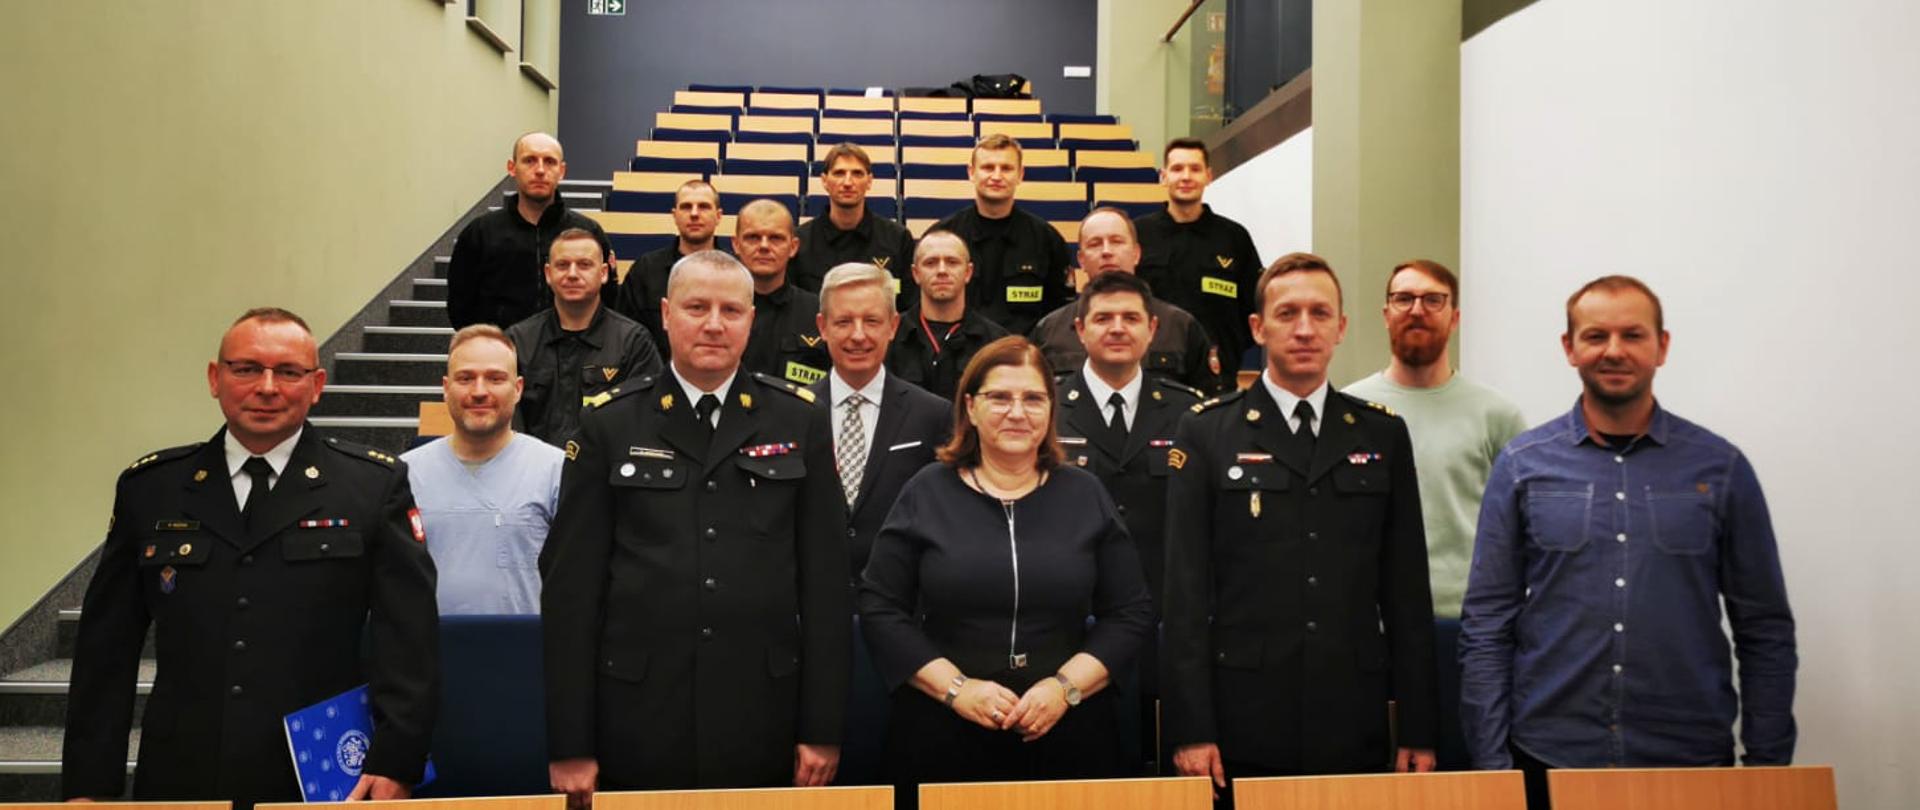 Zdjęcie grupowe na którym są zaproszeni goście, kadra dydaktyczna Uniwersytetu Medycznego w Poznaniu oraz grupa strażaków biorących udział w kursie.